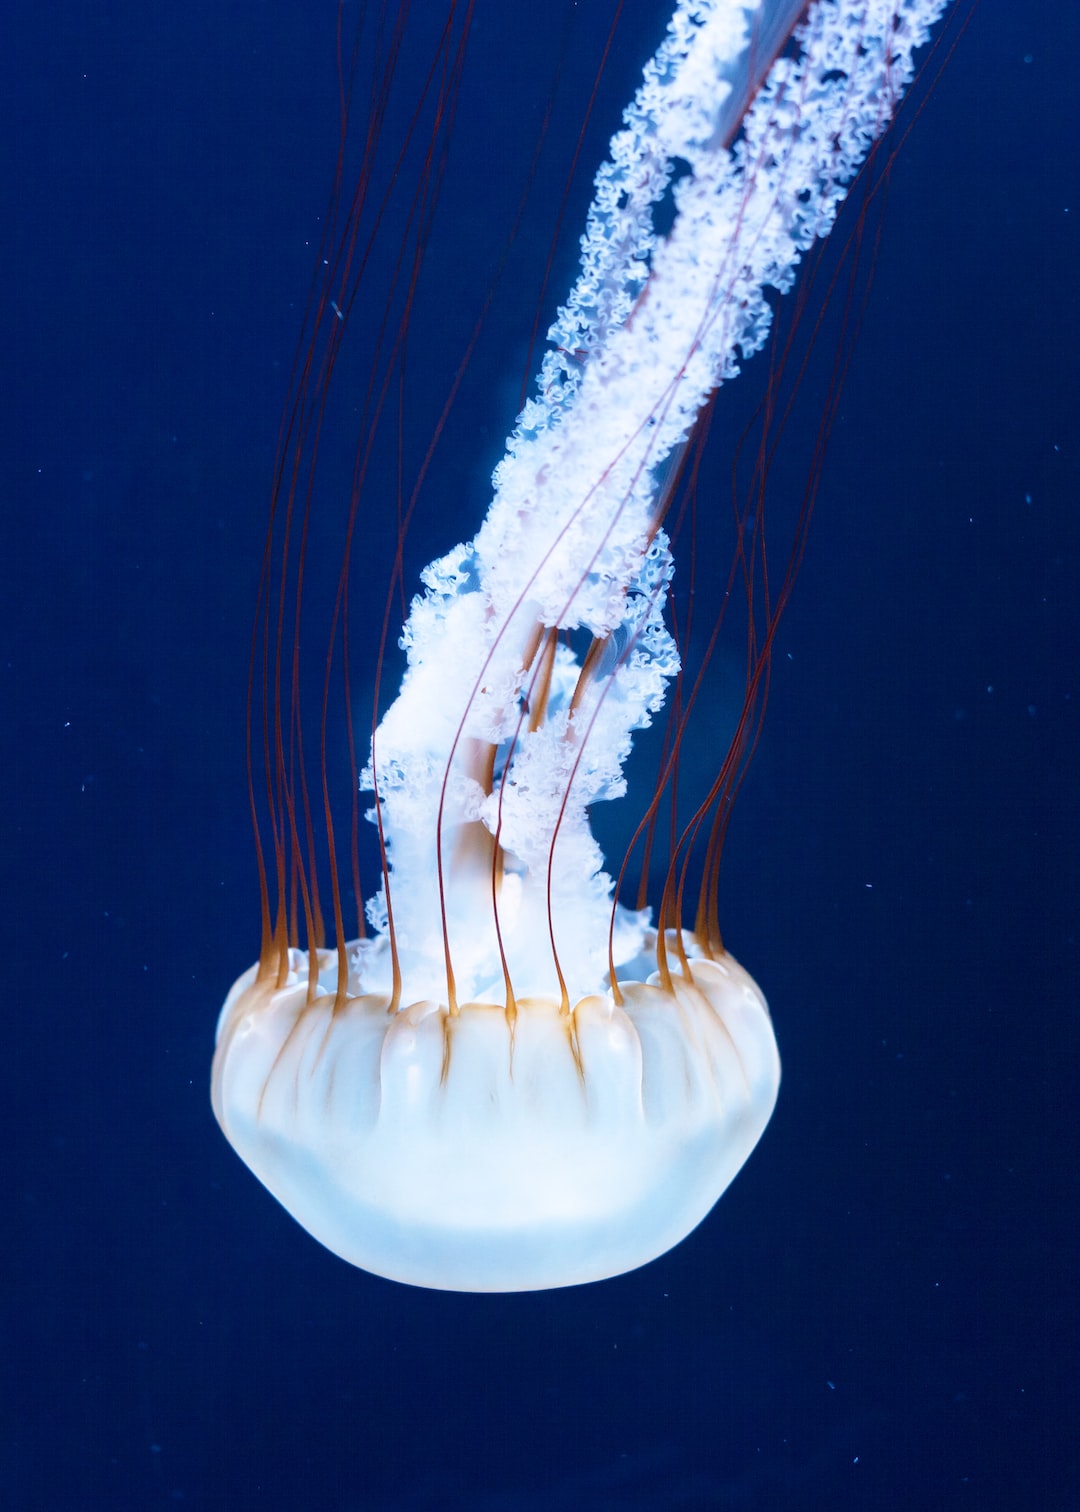 22 Aussergewöhnliche Fakten zu Aquarium 300 Liter